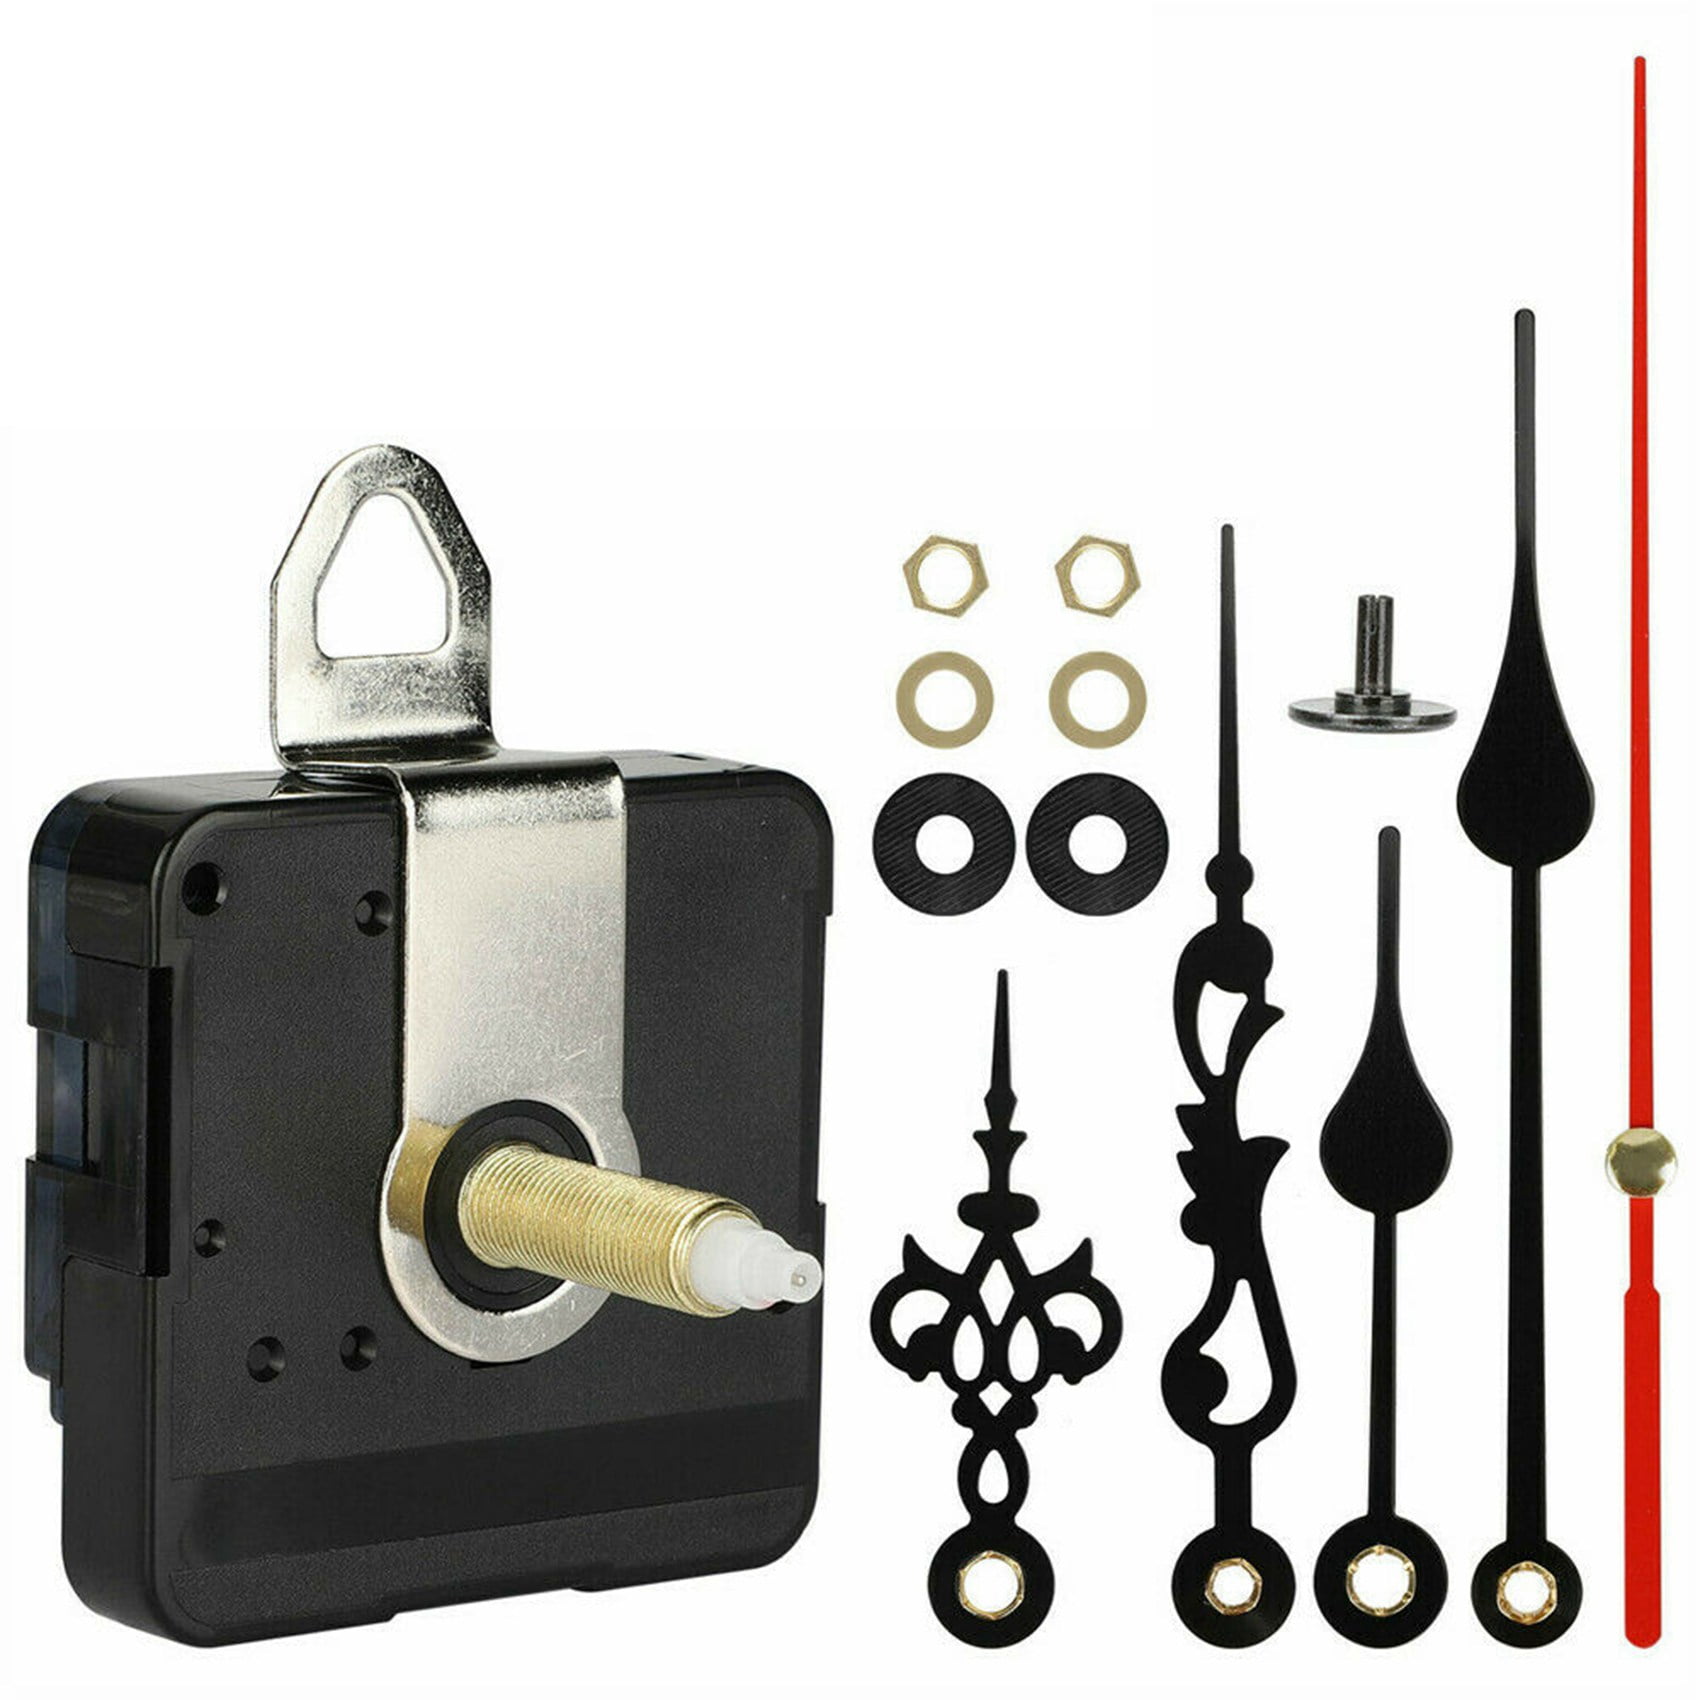 DIY Gold Hands Quartz Clock Movement Mechanism Parts Tool Set 